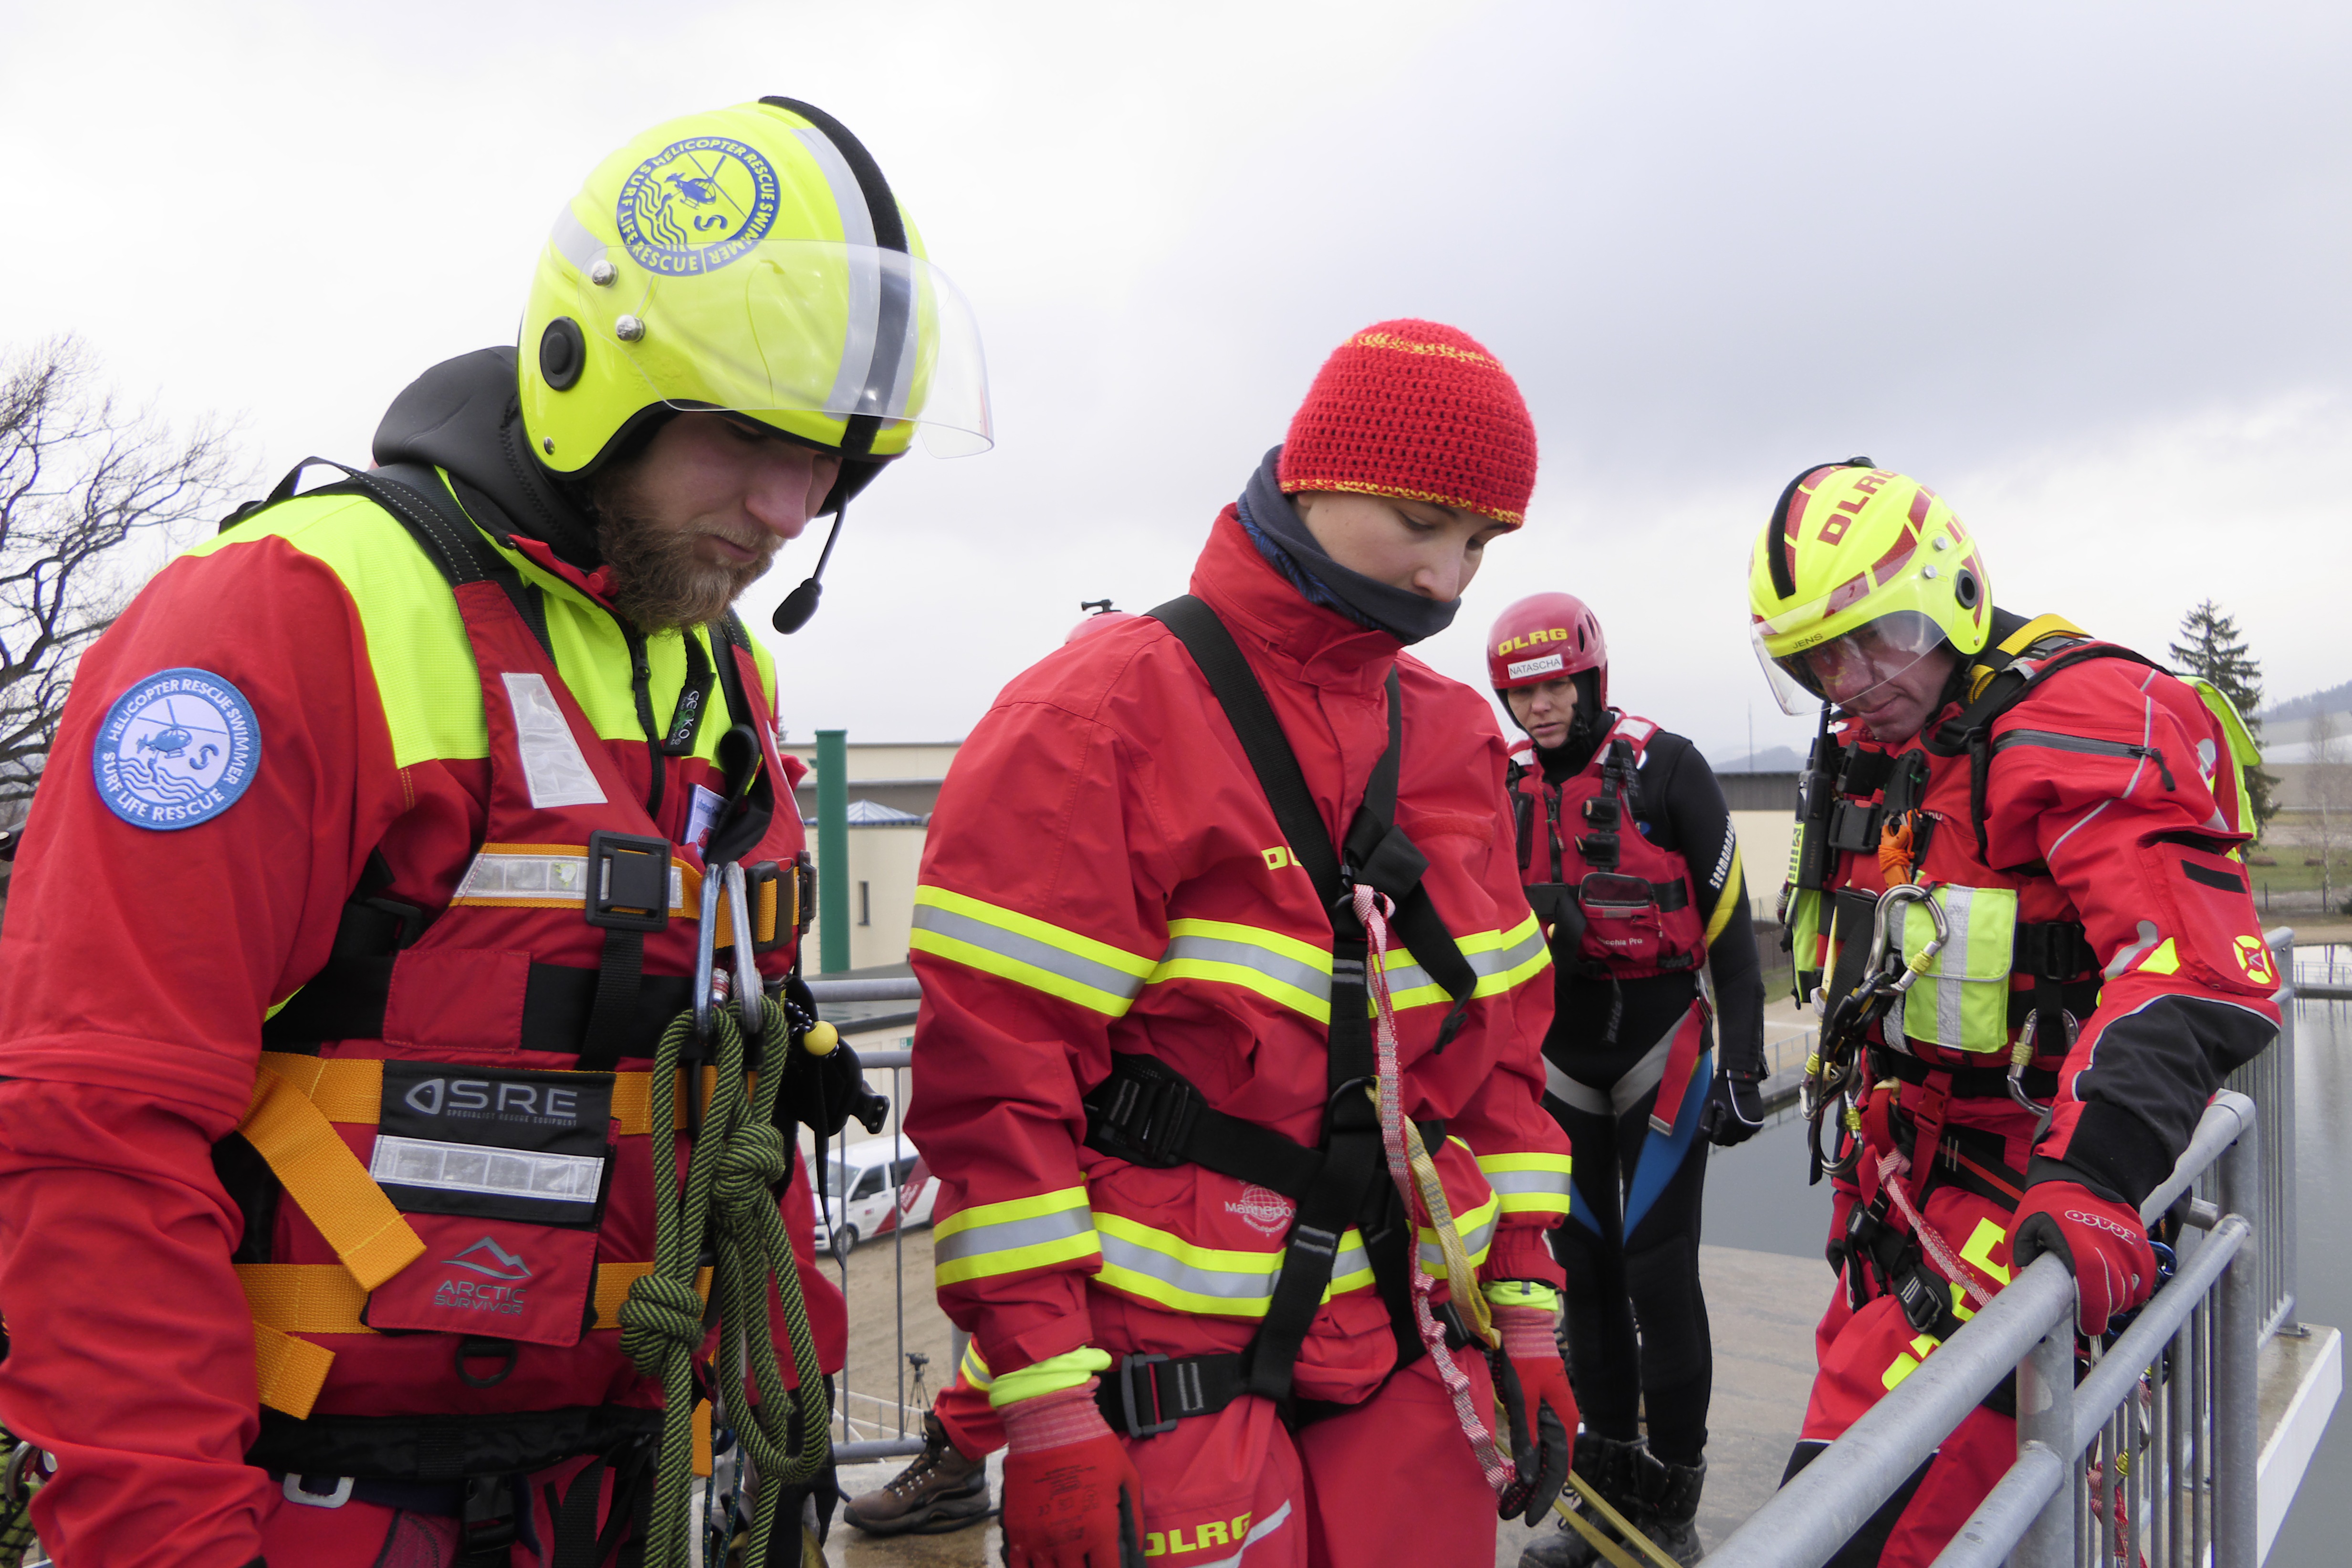 Emergency Live | O surgimento do HRS - Surf Life Rescue: salvamento aquático e imagem de segurança 46